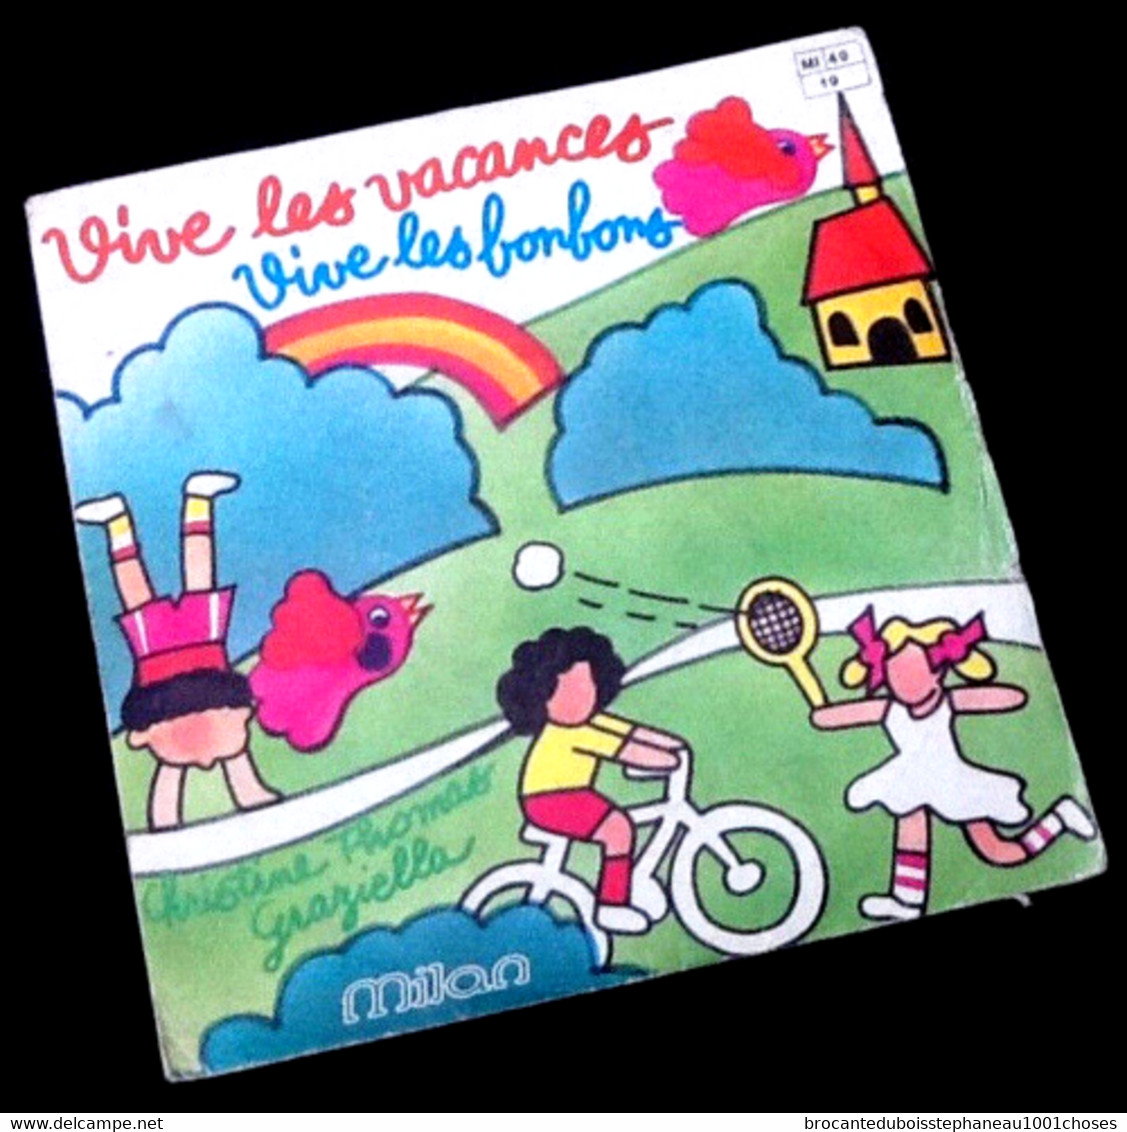 Vinyle 45 Tours Christine Thomas Graziella Vive Les Vacances Vive Les Bonbons (1980) Milan MI 40 - Children